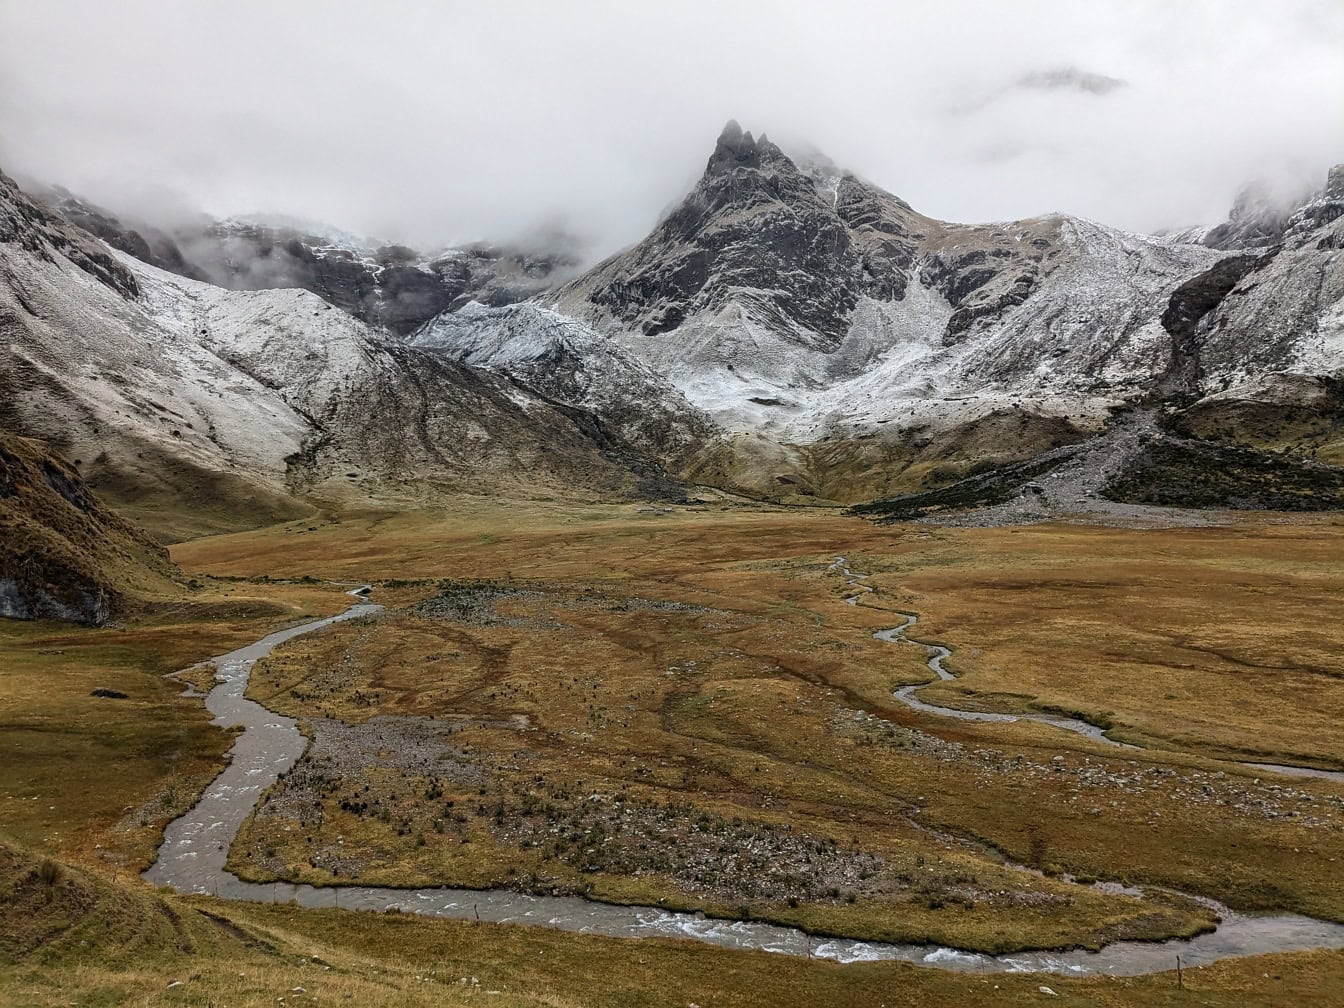 Flod som rinner genom en dal med snötäckta berg i bergskedjan Cordillera Huayhuash i Peru